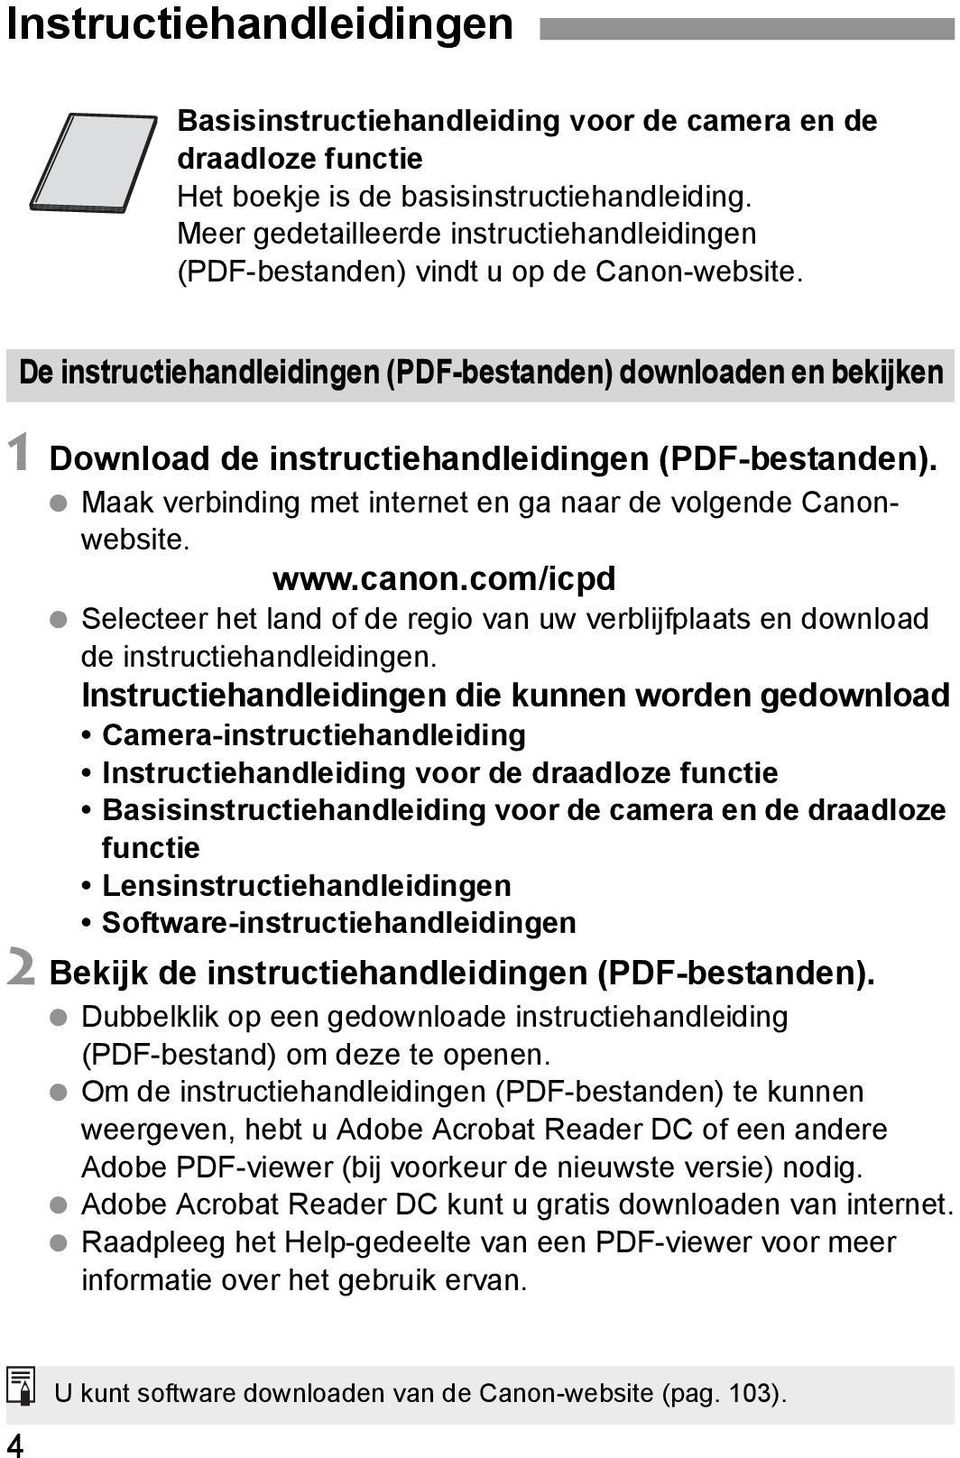 De instructiehandleidingen (PDF-bestanden) downloaden en bekijken 1 Download de instructiehandleidingen (PDF-bestanden). Maak verbinding met internet en ga naar de volgende Canonwebsite. www.canon.